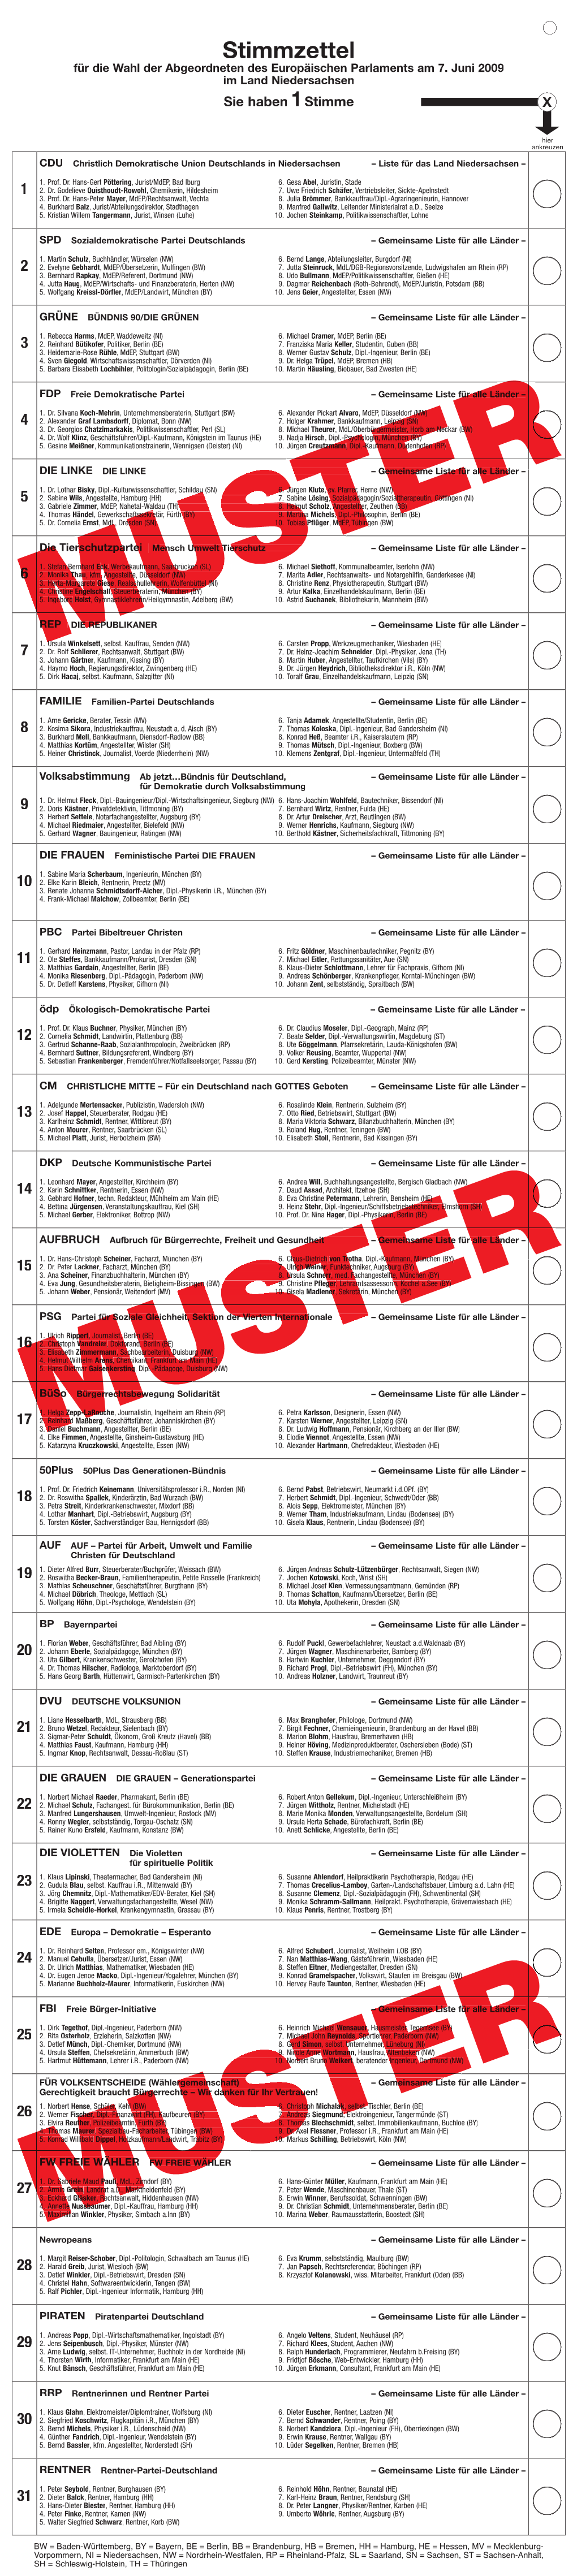 Stimmzettel Für Die Wahl Der Abgeordneten Des Europäischen Parlaments Am 7